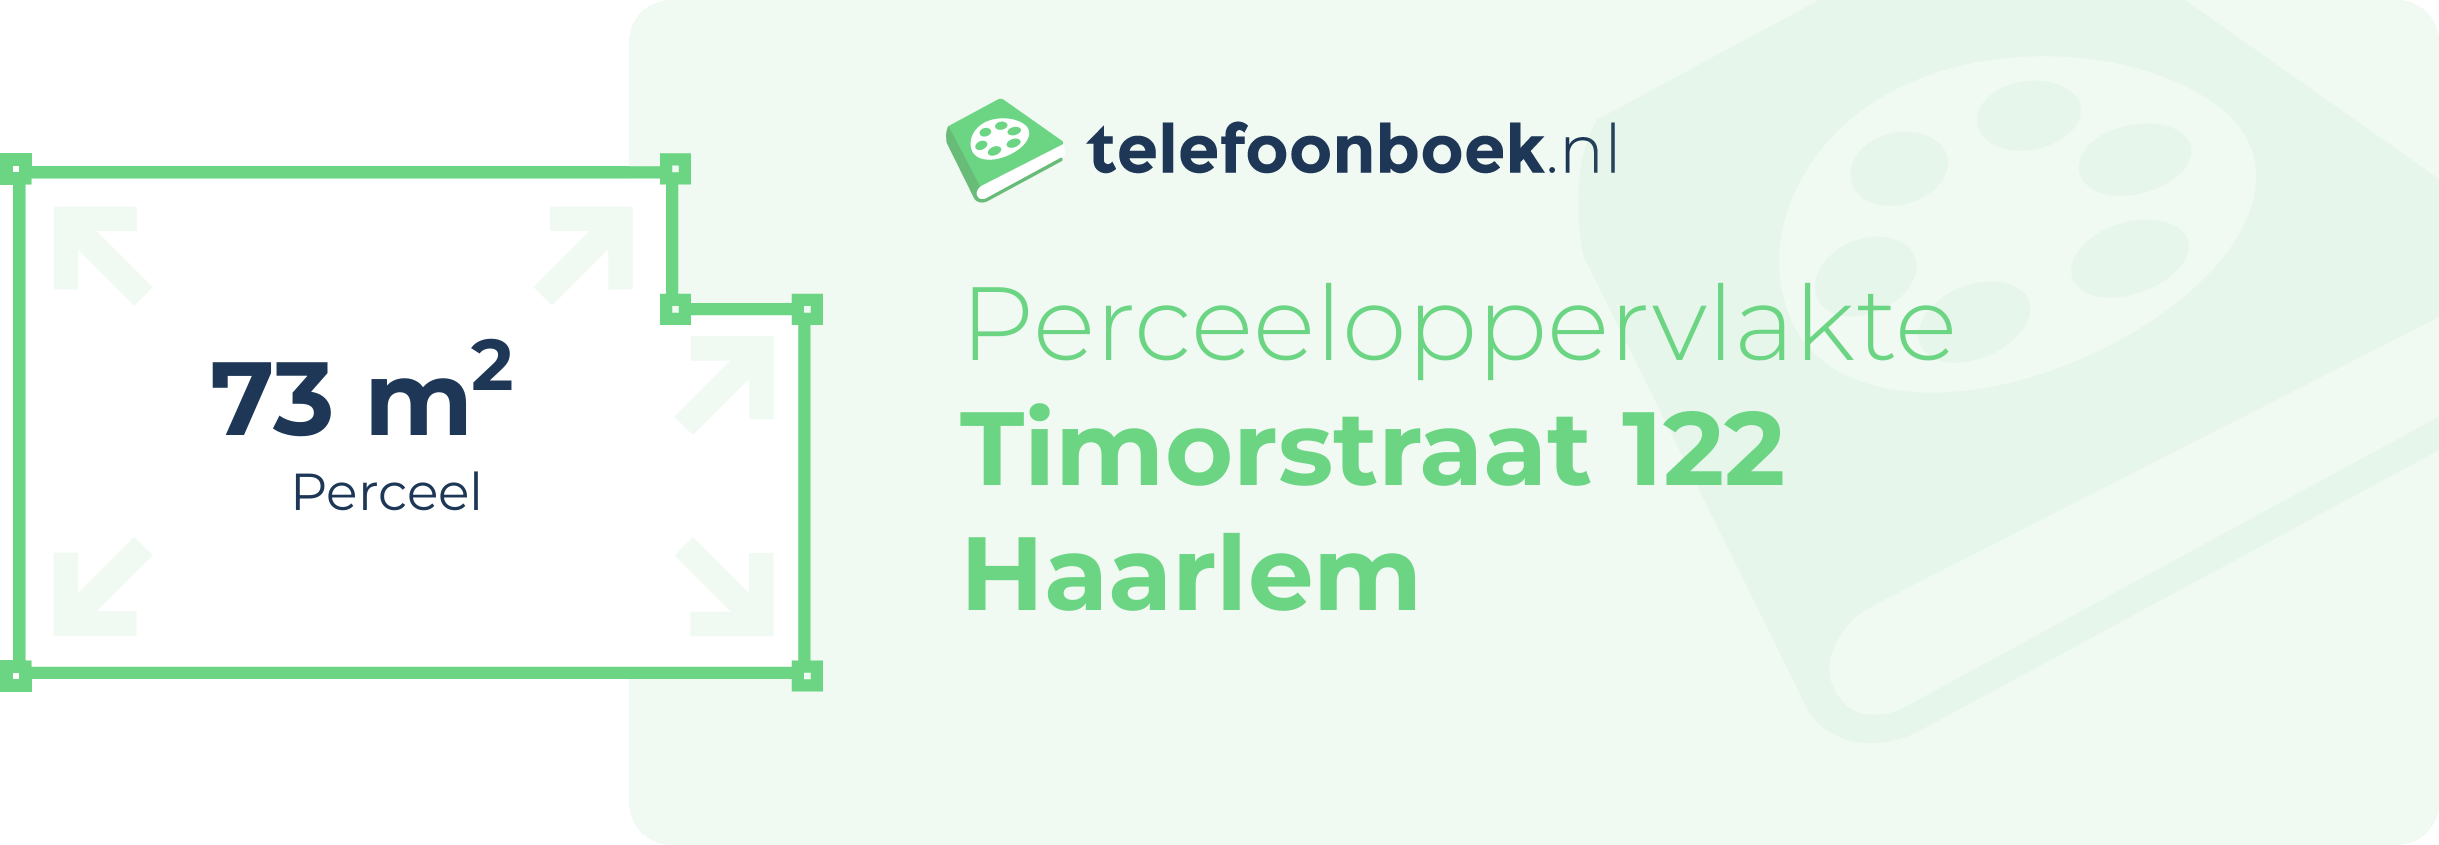 Perceeloppervlakte Timorstraat 122 Haarlem